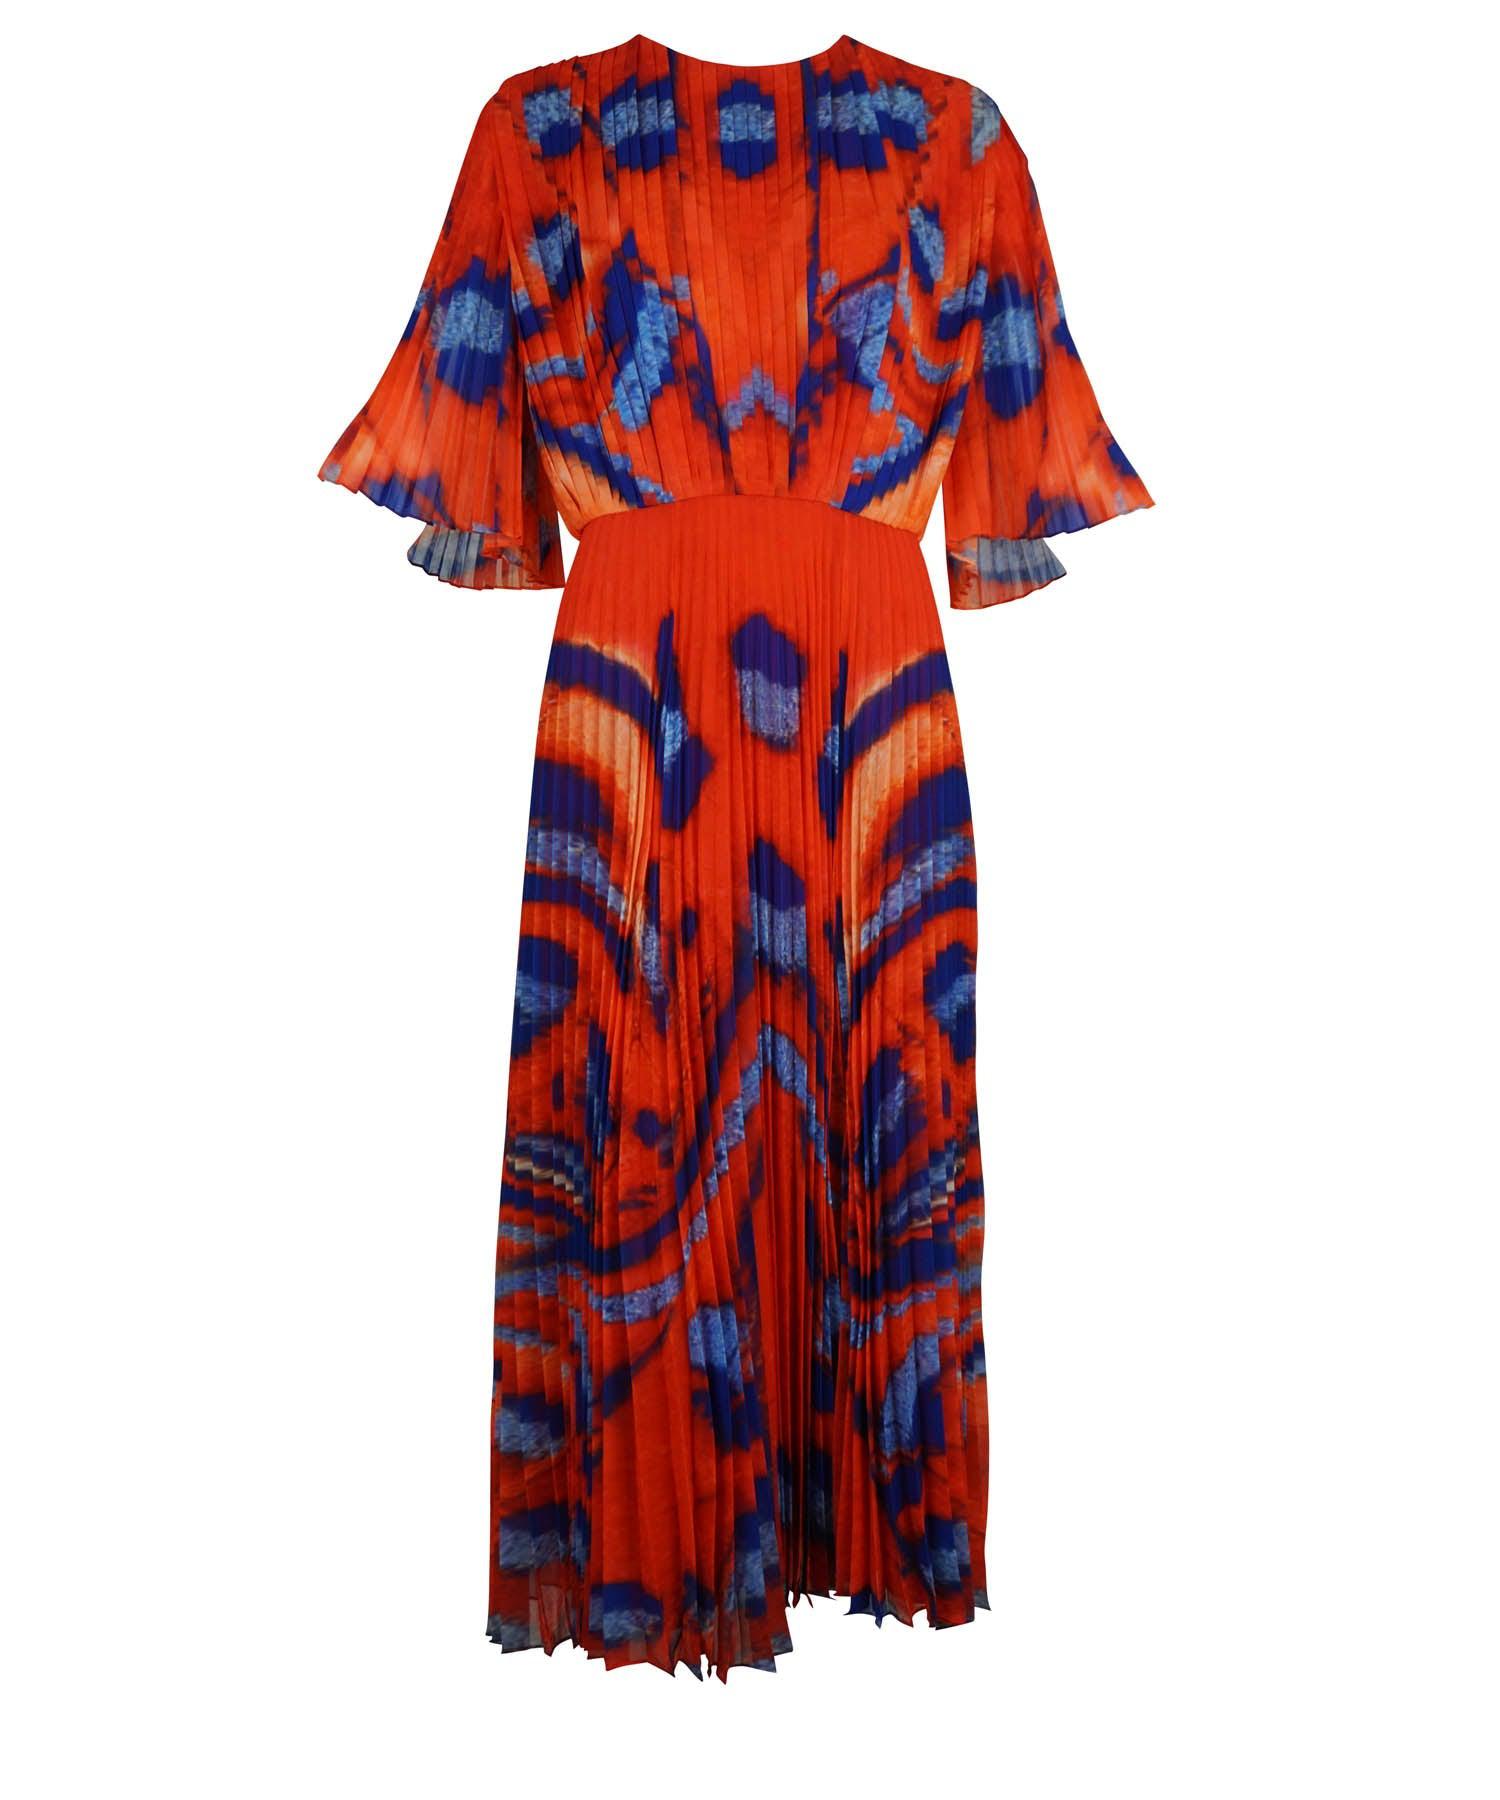 Altuzarra Tandoori Moth Pleated Dress 2021 Fall Sz 38 - Foxy Couture Carmel